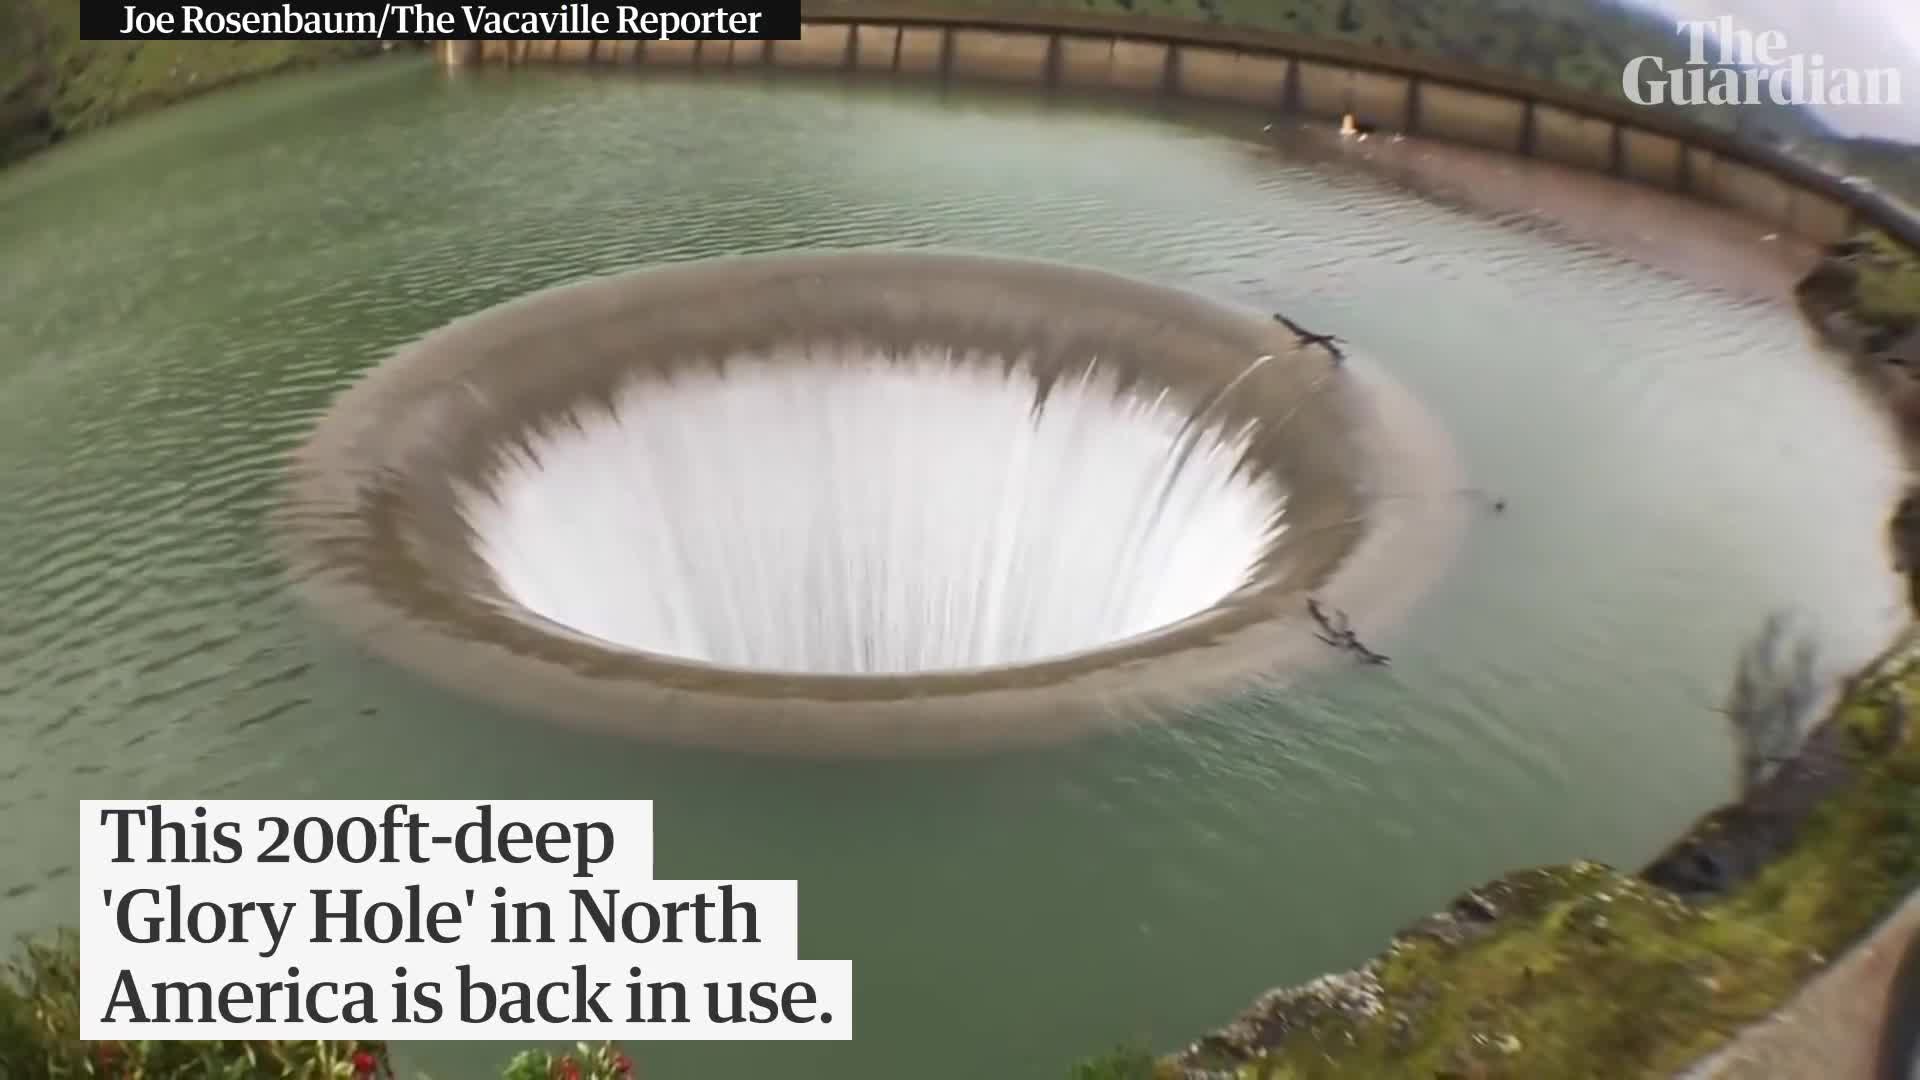 Giải mã bí ẩn về “hố đen tử thần” hút mọi vật xung quanh xuất hiện ở hồ Berryessa